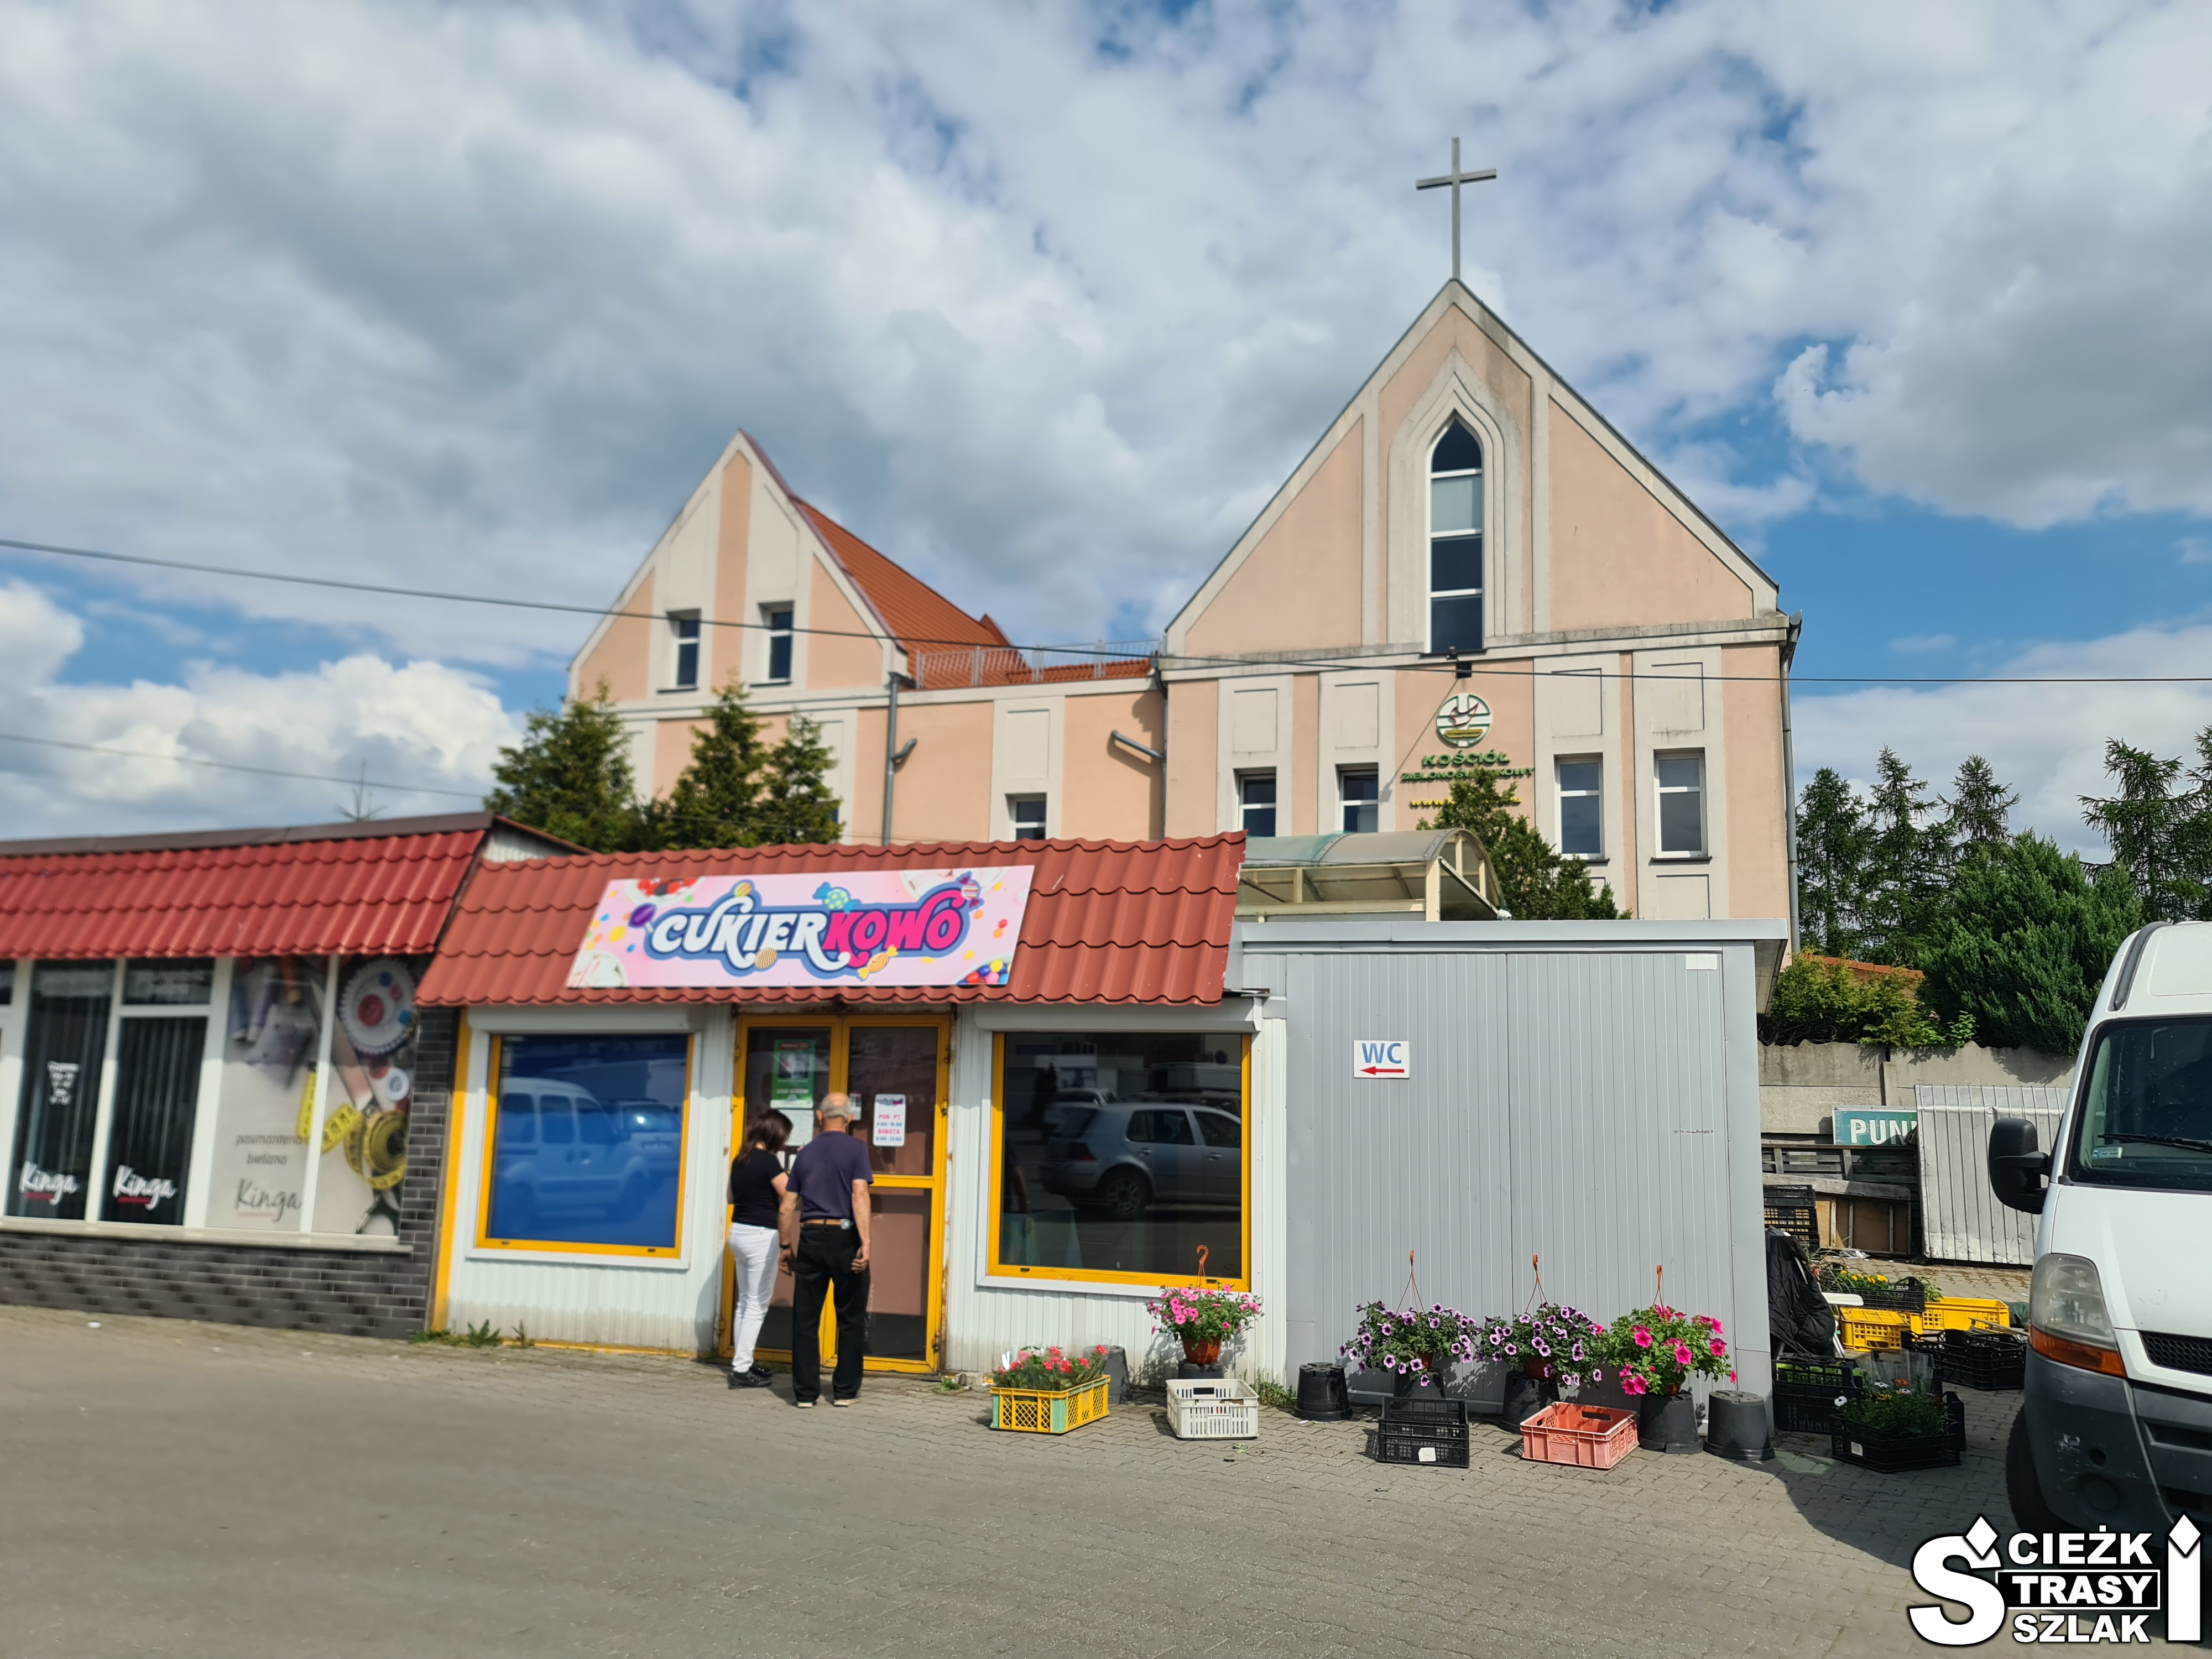 Budynek kościoła zielonoświątkowców w Świebodzinie z kremowo-beżową elewacją i krzyżem na dachu za kioskami ze słodyczami